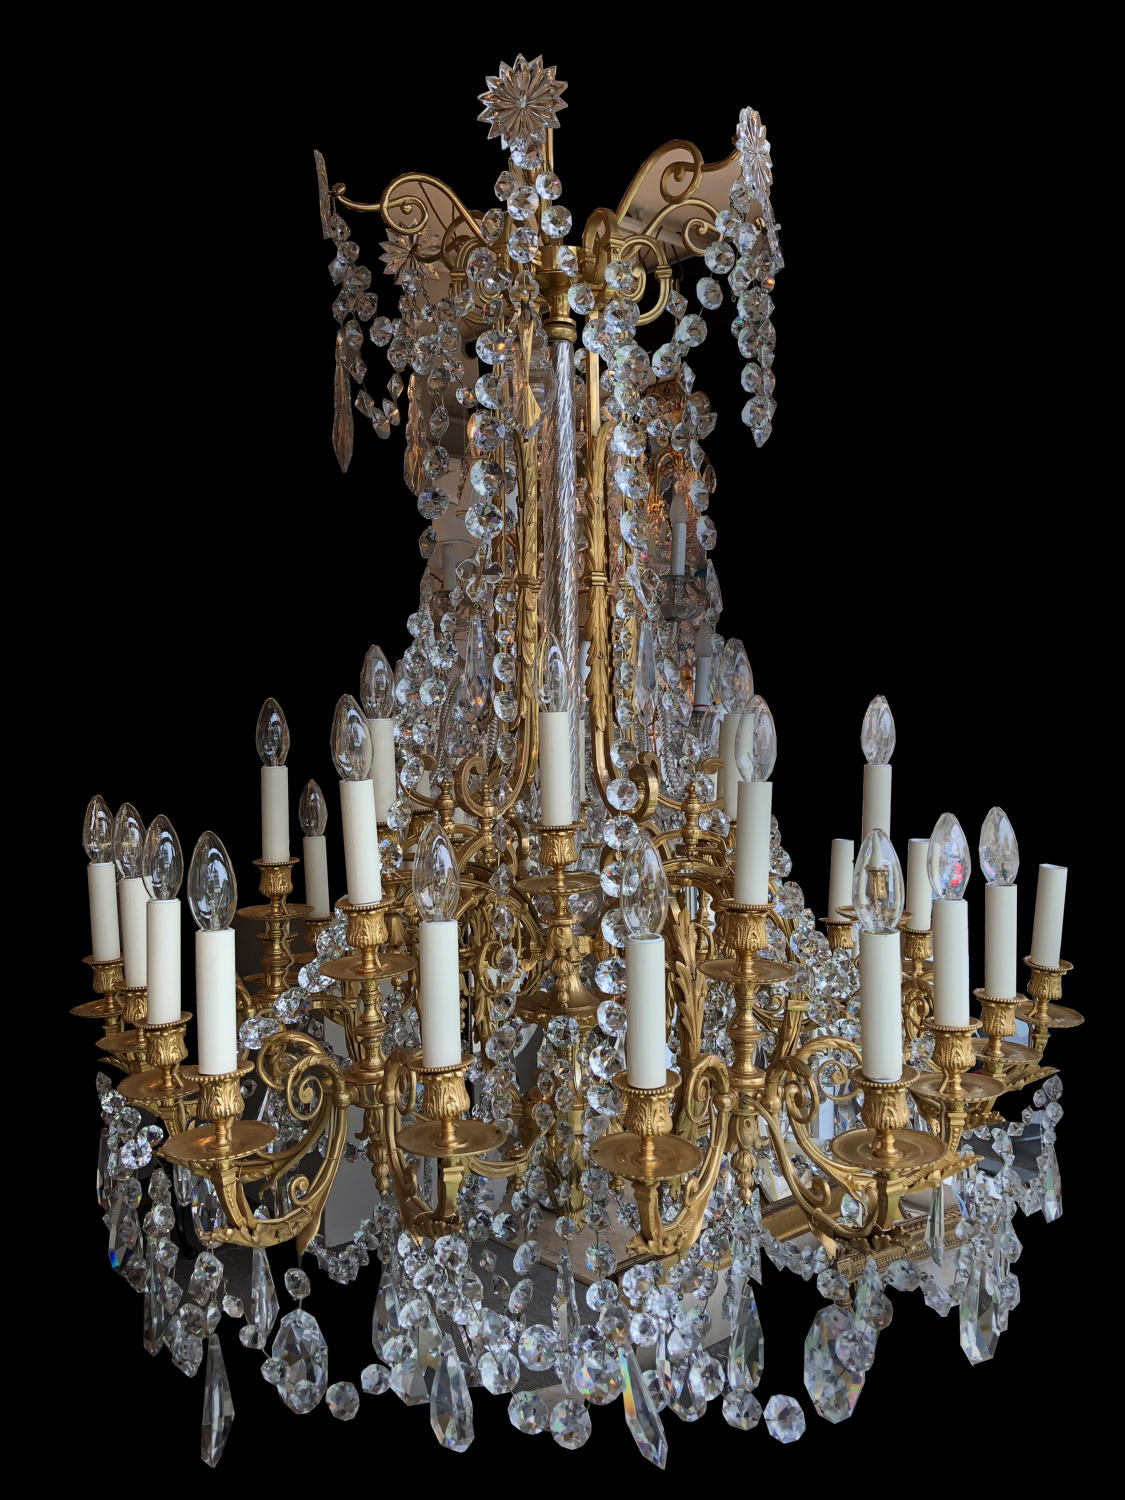 A large, eighteen light ormolu chandelier